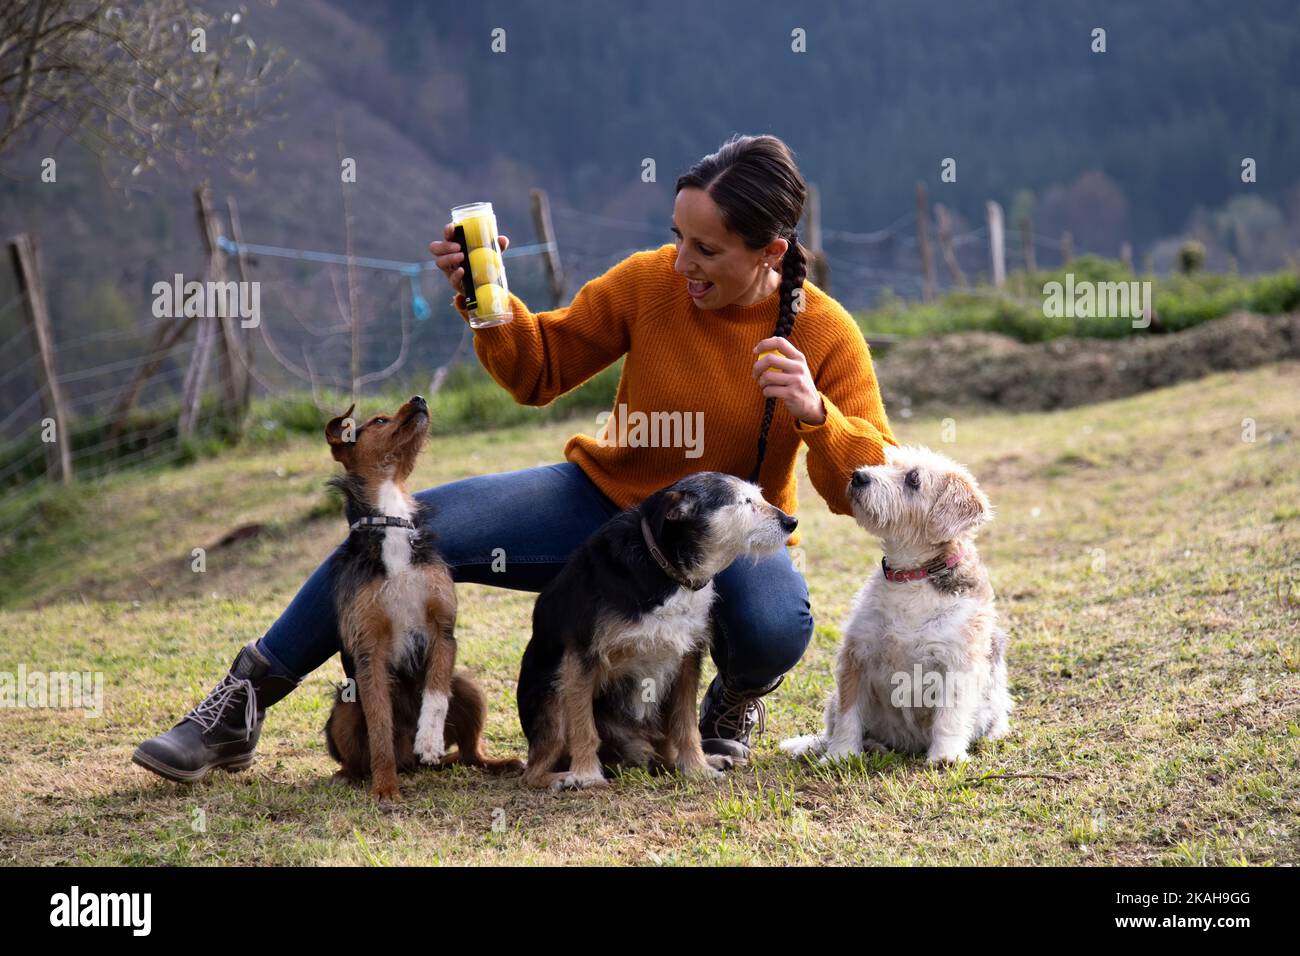 35 Jahre alte kaukasische Frau mit langen braunen Haaren zeigt das Geschenk für ihre Hunde. Tennisbälle zum Spielen. Emotion. Familienfoto. Speicherplatz kopieren. Stockfoto